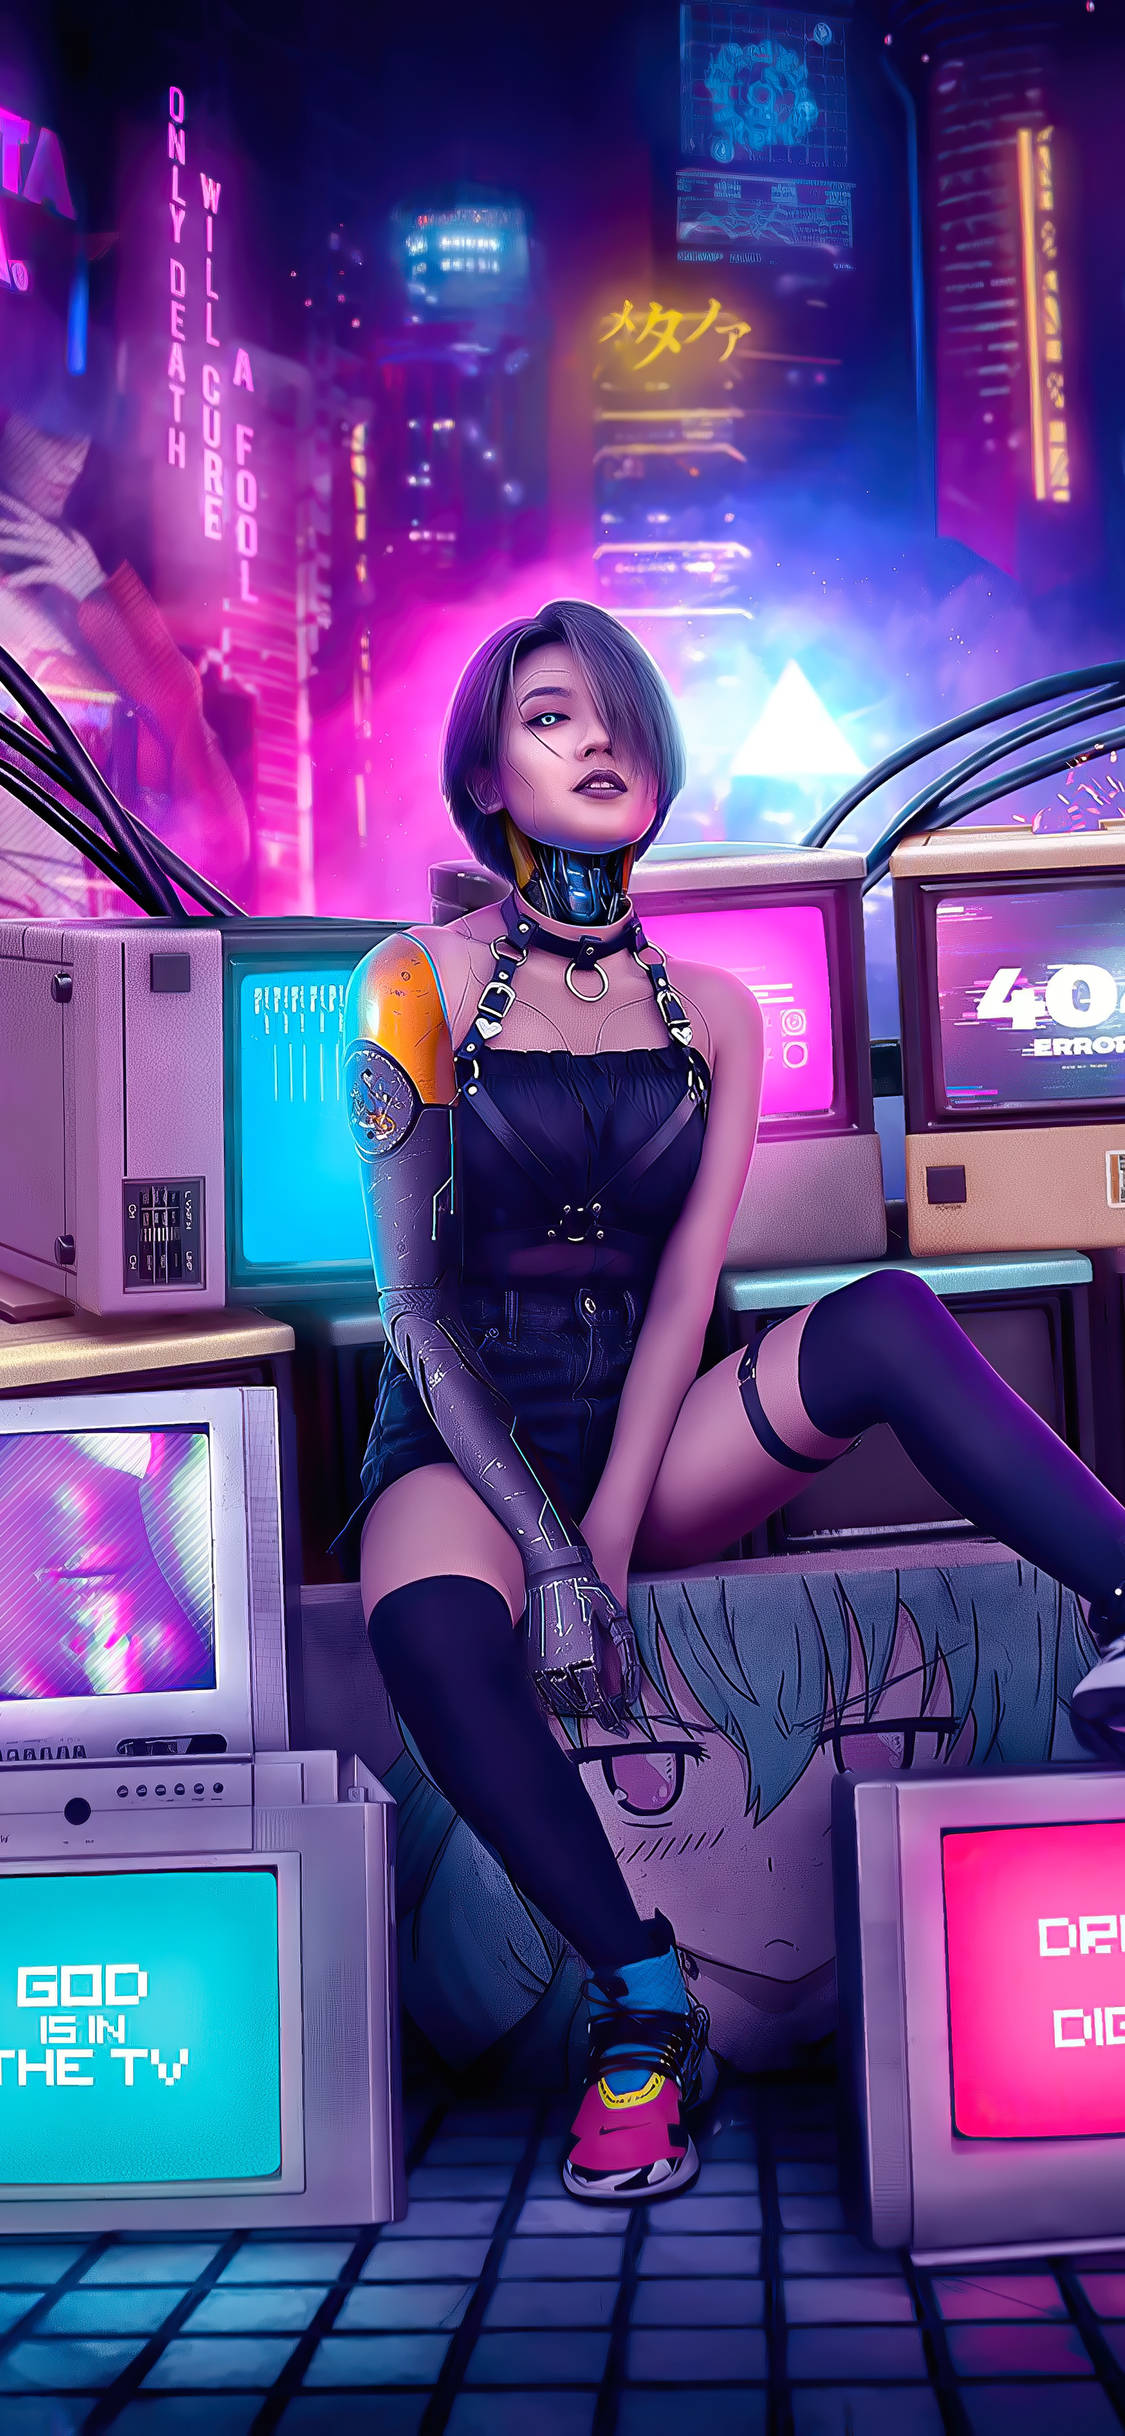 Cyberpunk Female On A Box Iphone Background